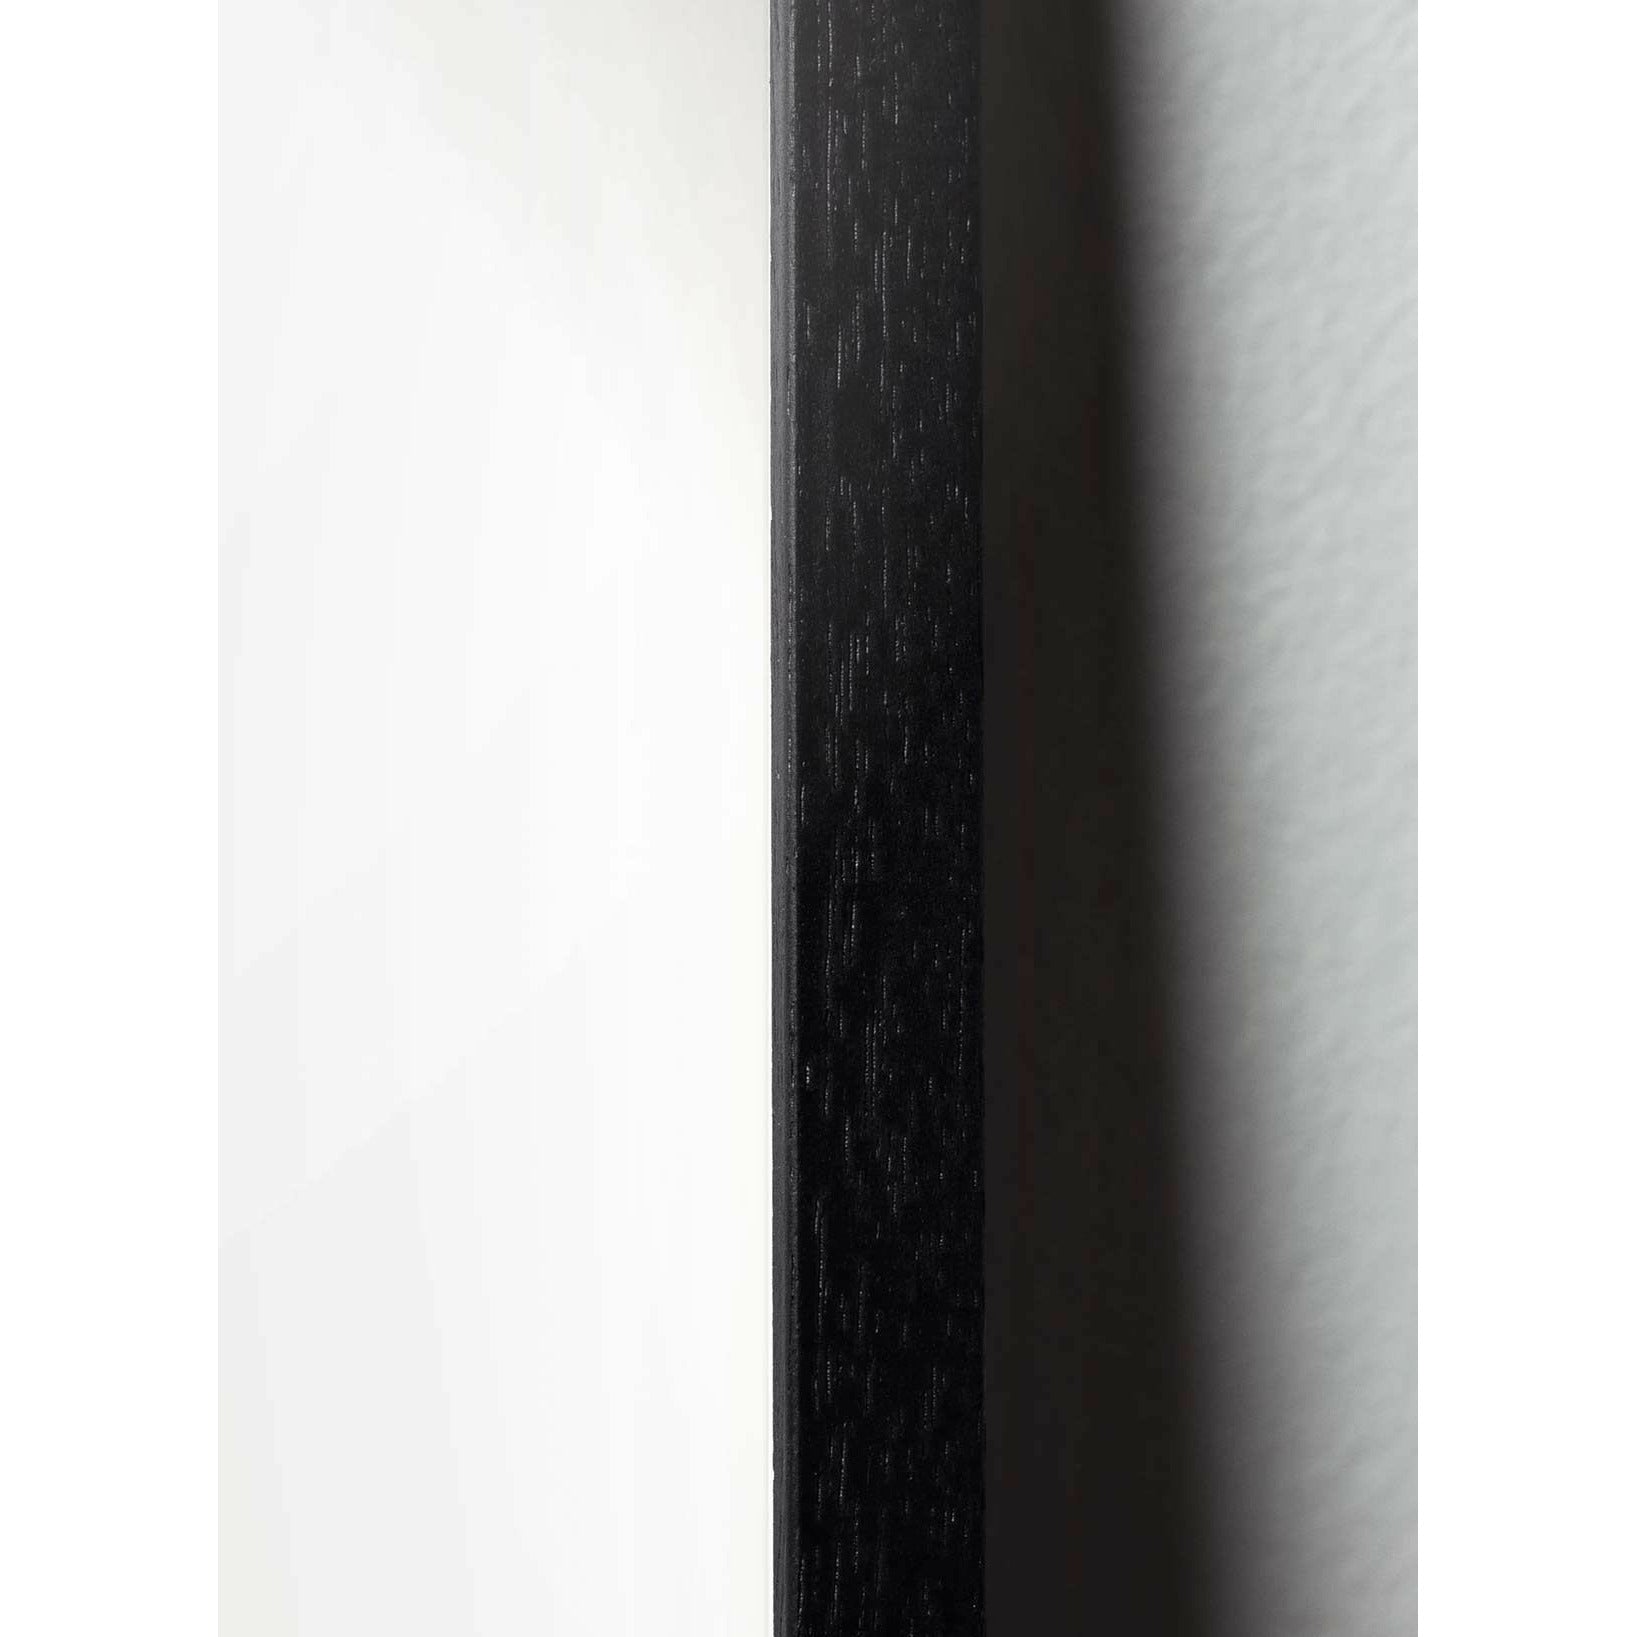 Plakát s labutí linky, rám v černém lakovaném dřevu 50x70 cm, bílé pozadí